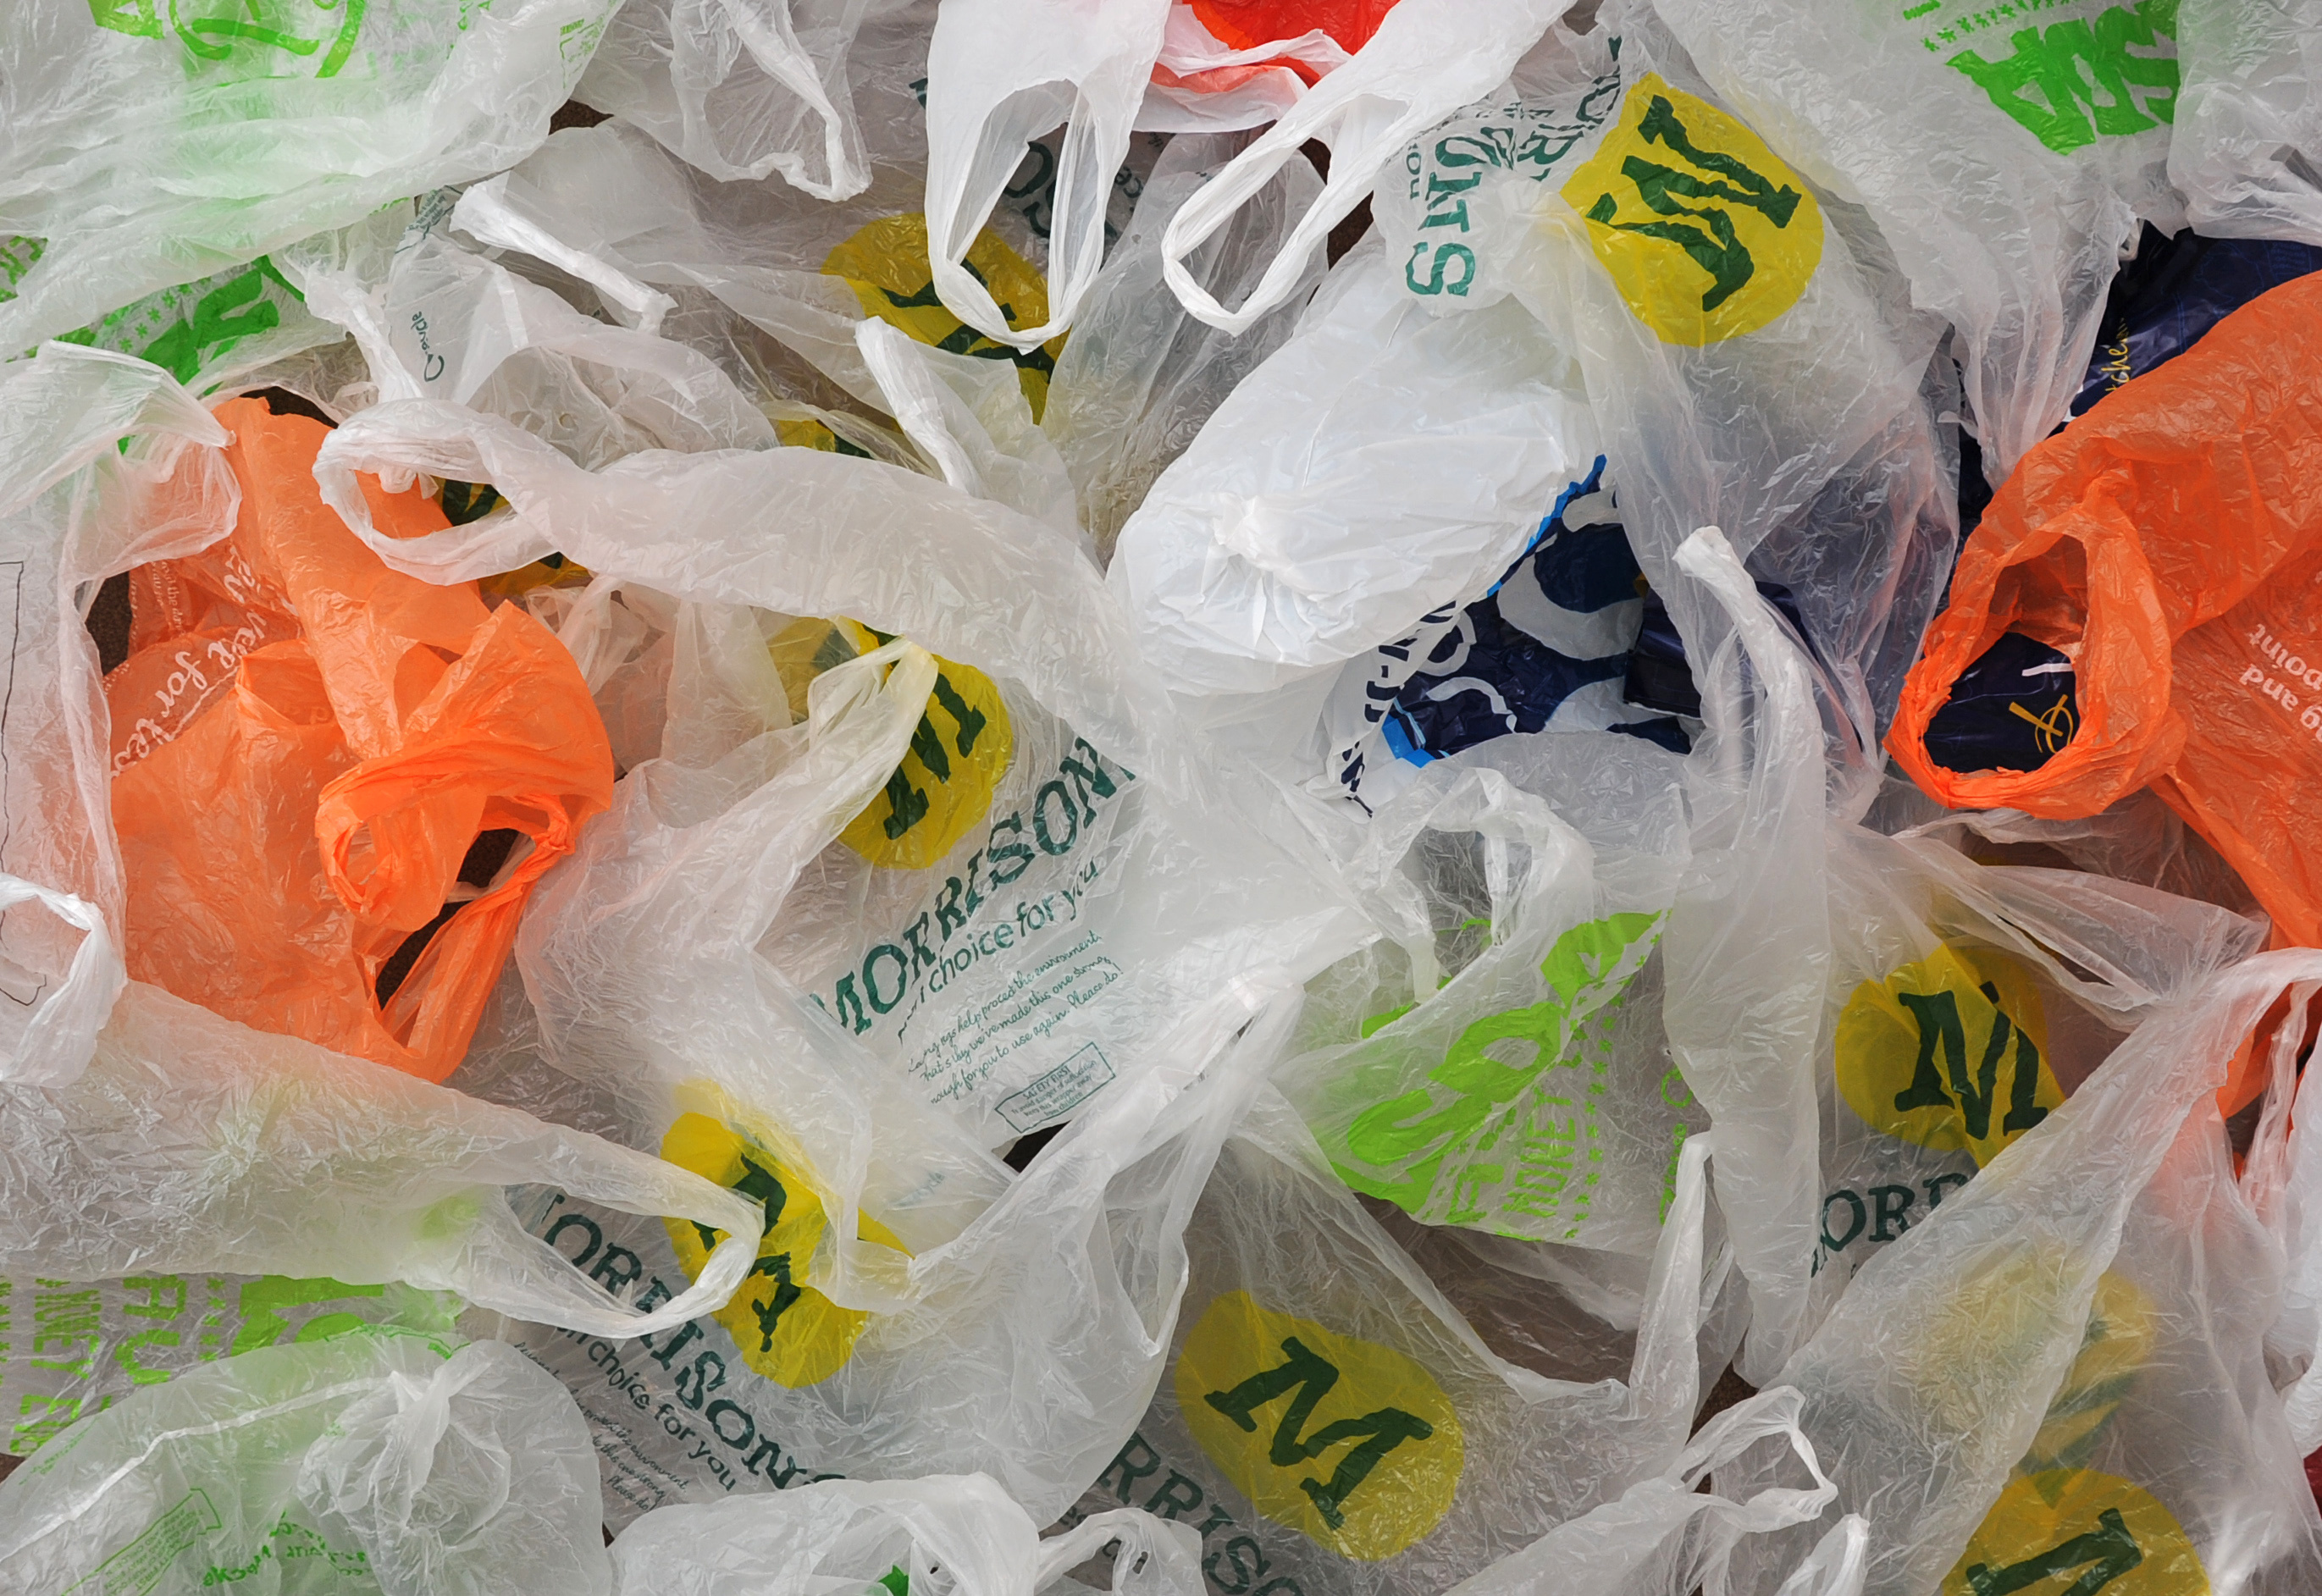 Пластиковые пакеты в супермаркетах Англии стали платными